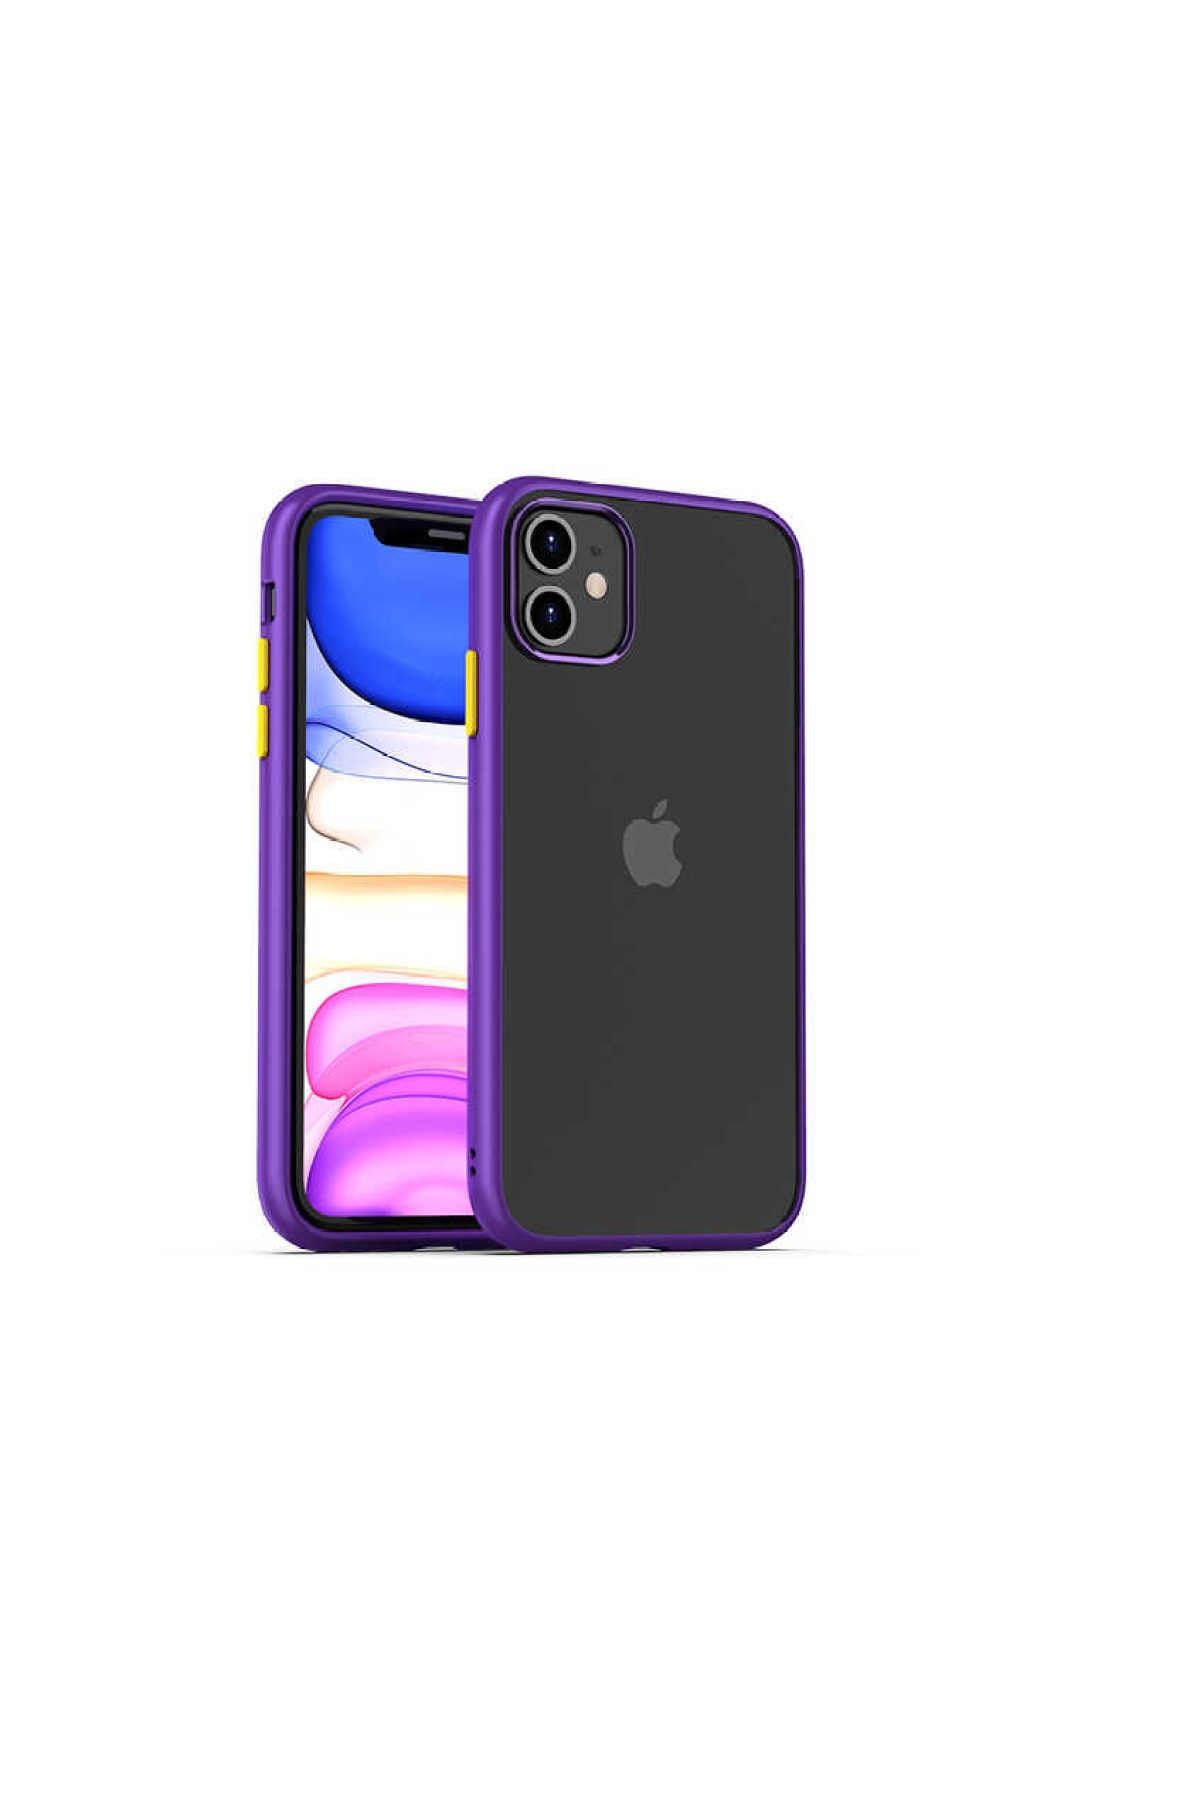 CaseWorld Apple Iphone 11 Uyumlu Kapak Arkası Şeffaf Kenarları Renkli Exclusive Kılıf - Mor